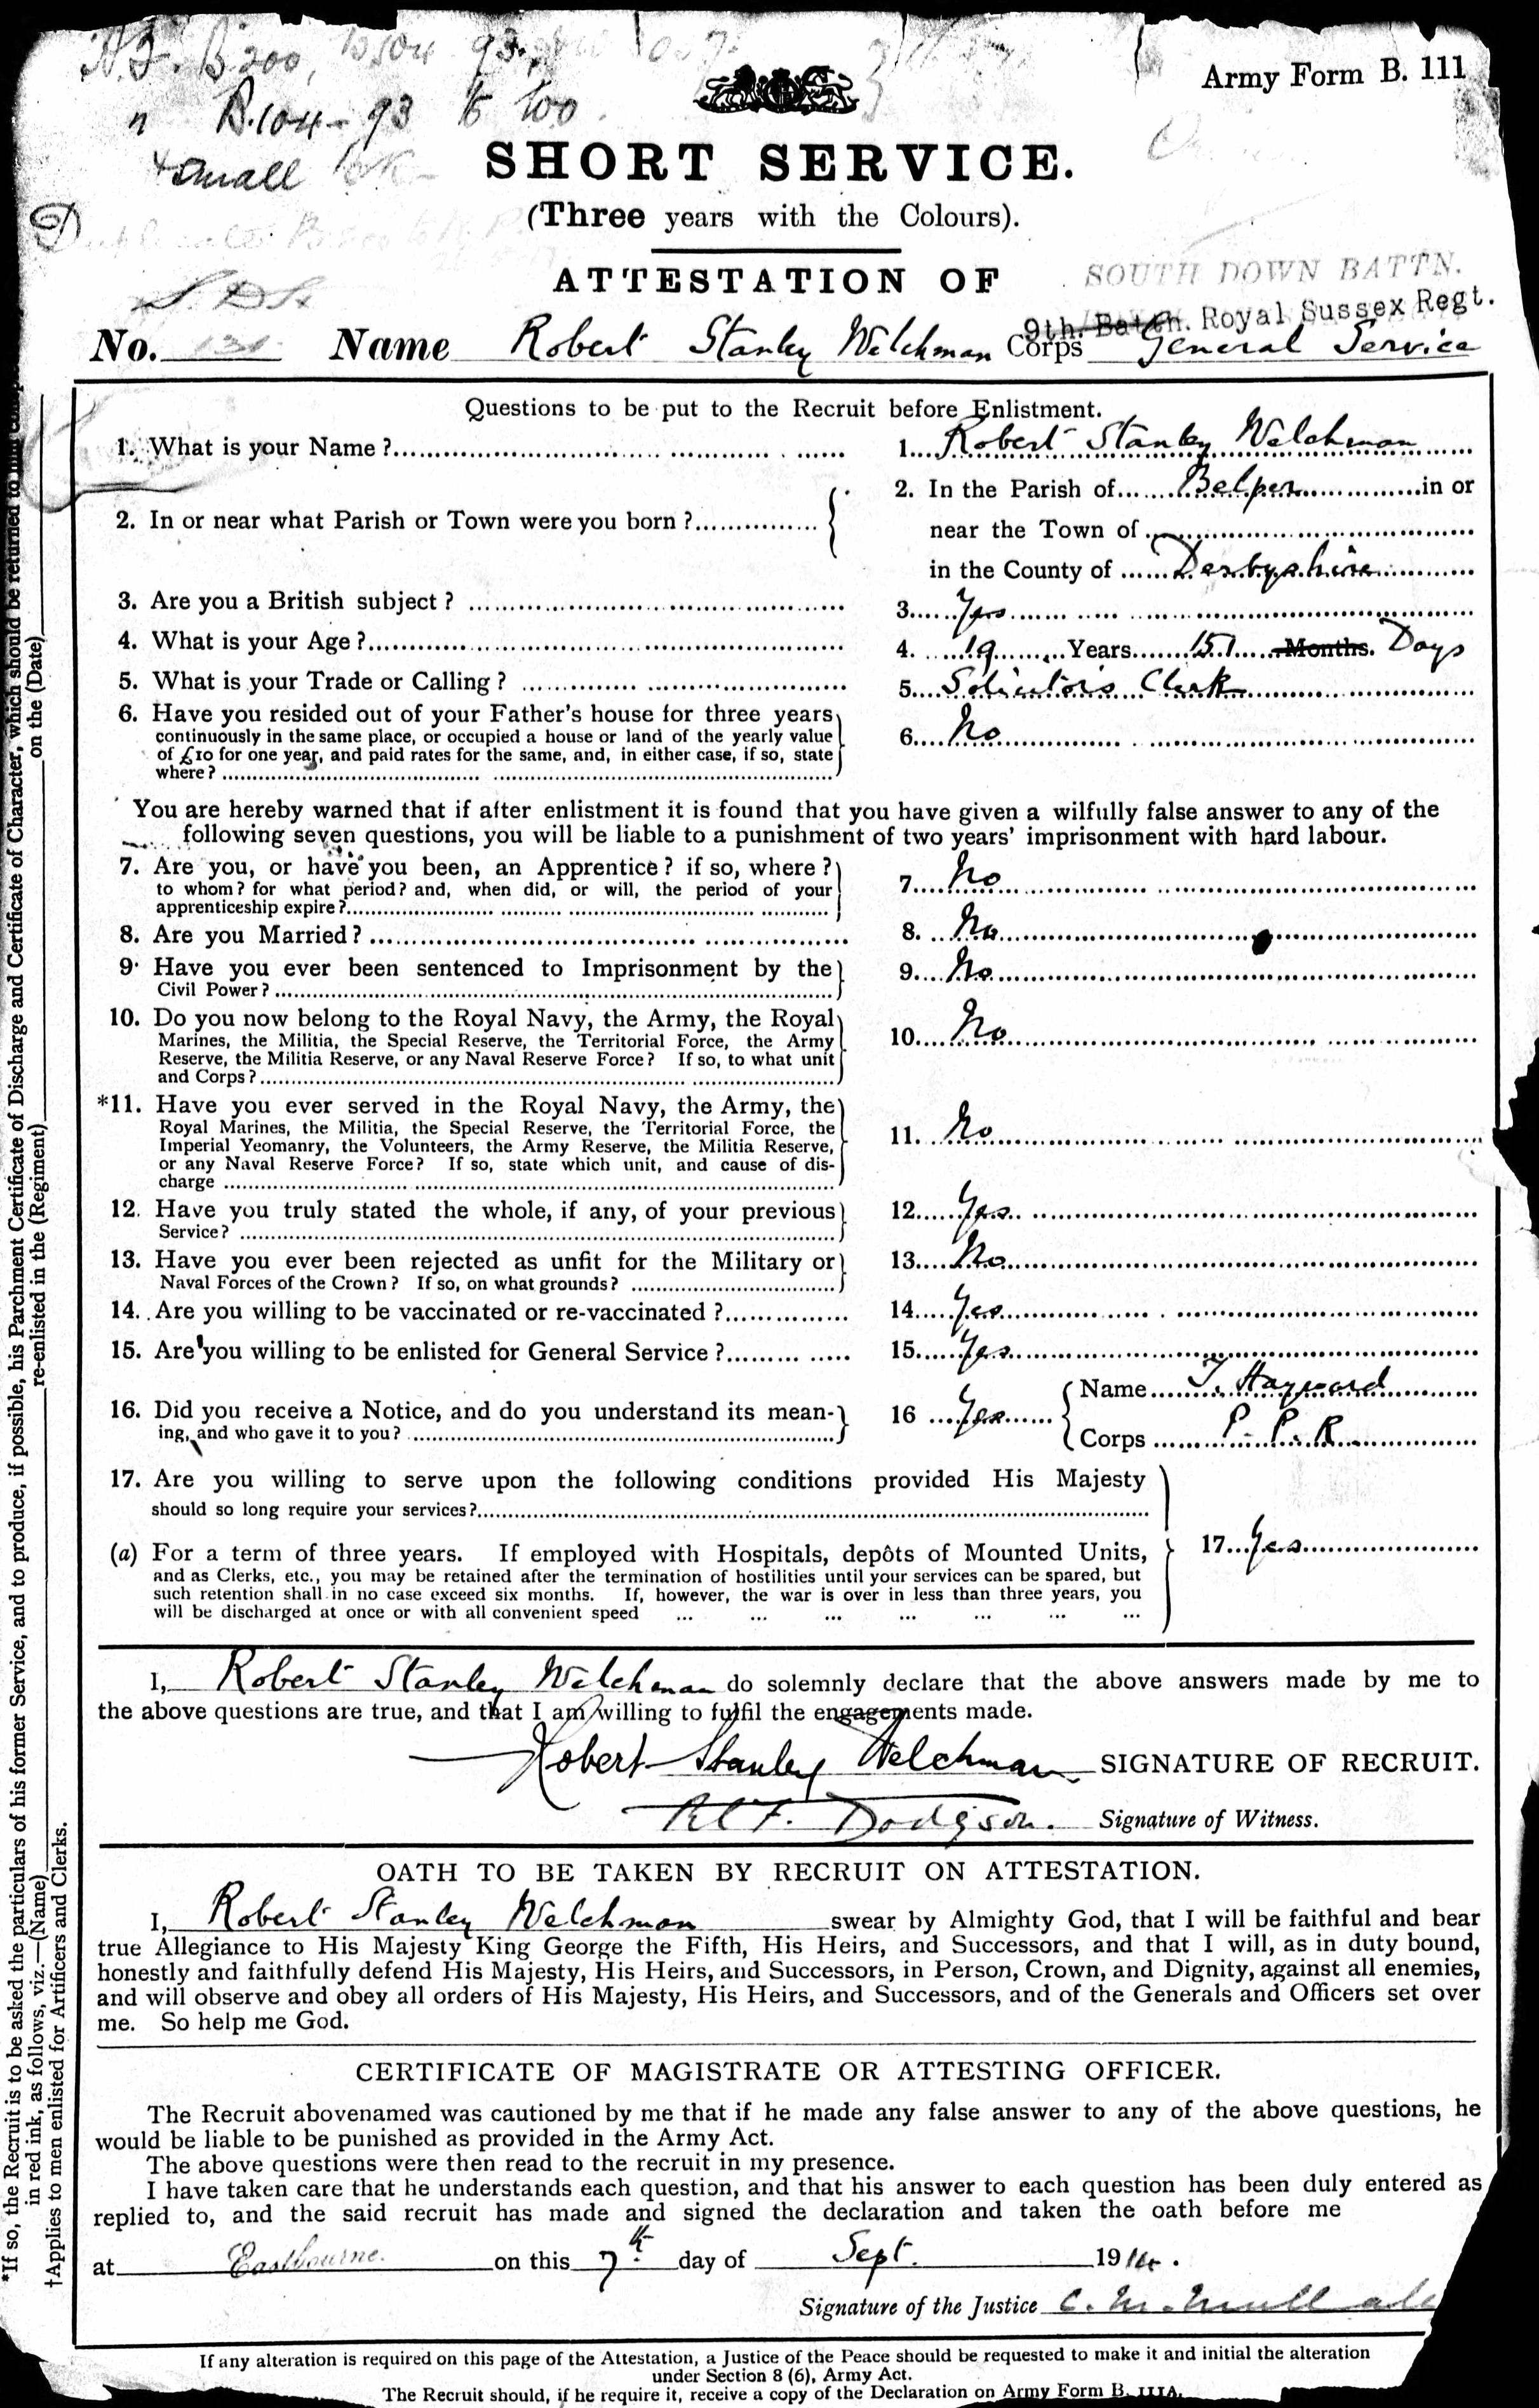 Welchman attestation document